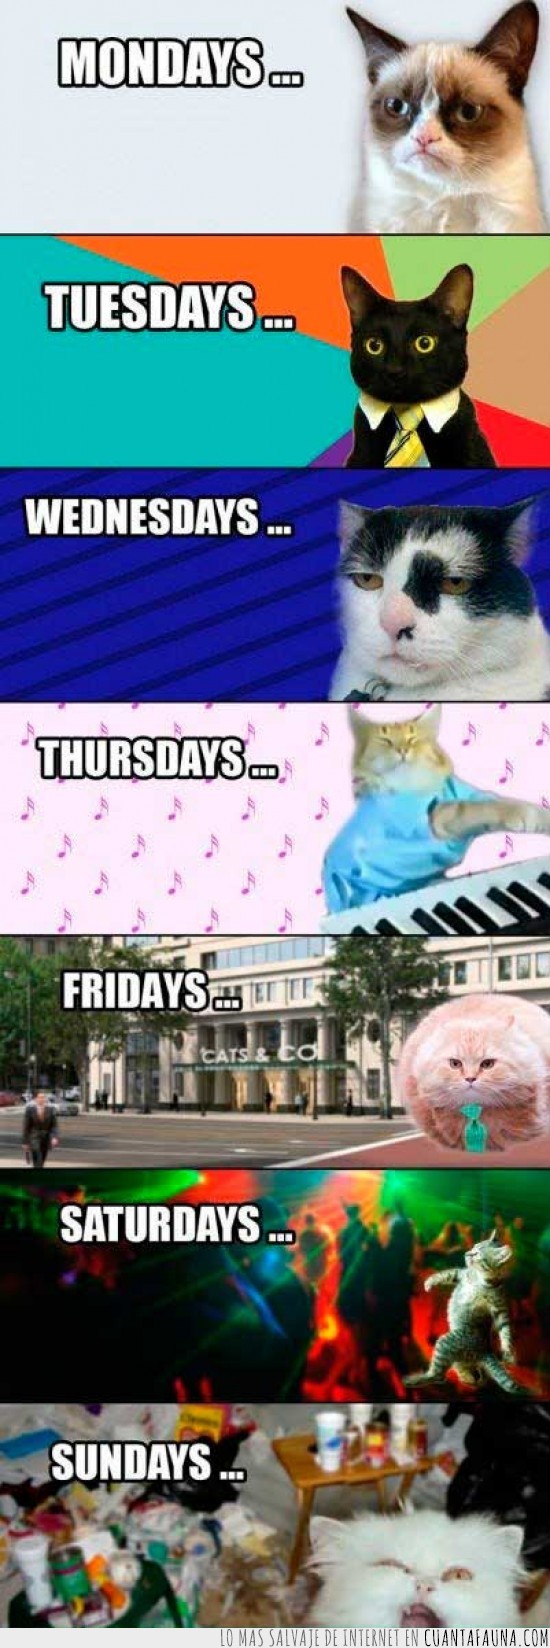 gatos,días de la semana,humor,lunes,martes,sábado,días